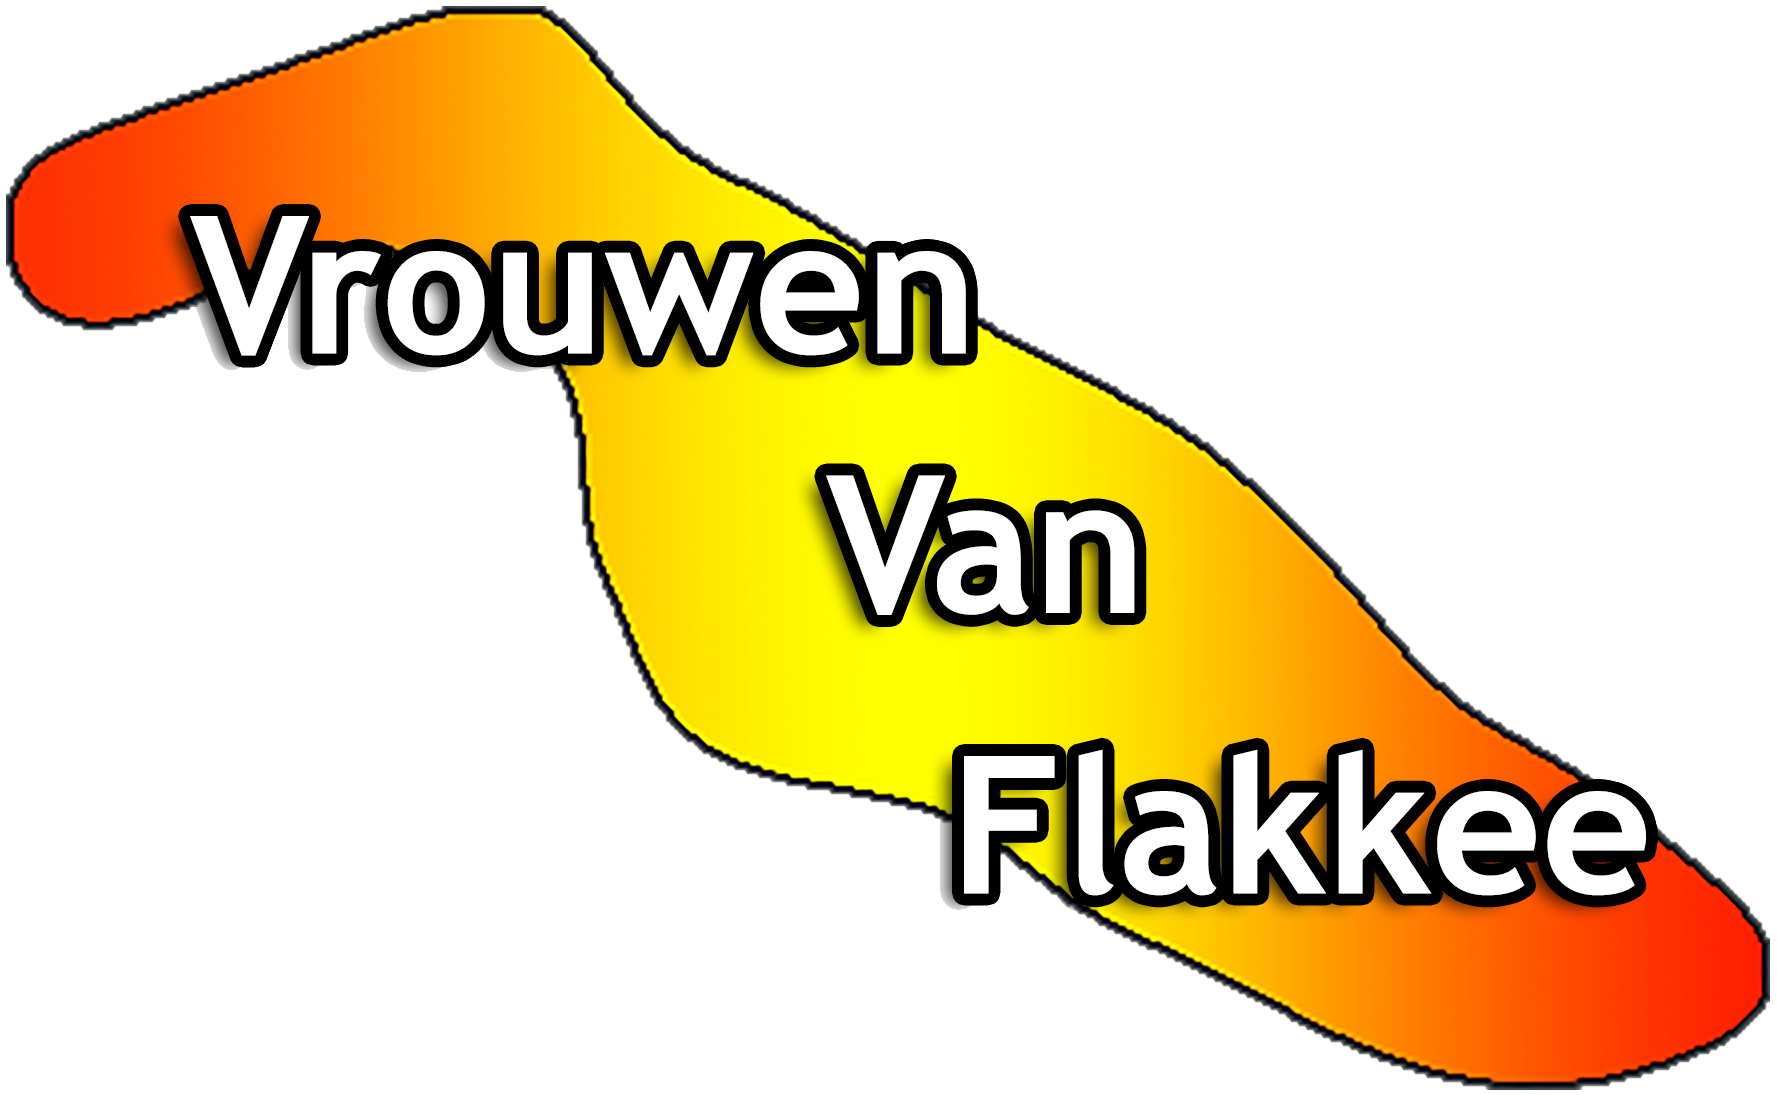 Vrouwen Van Flakkee